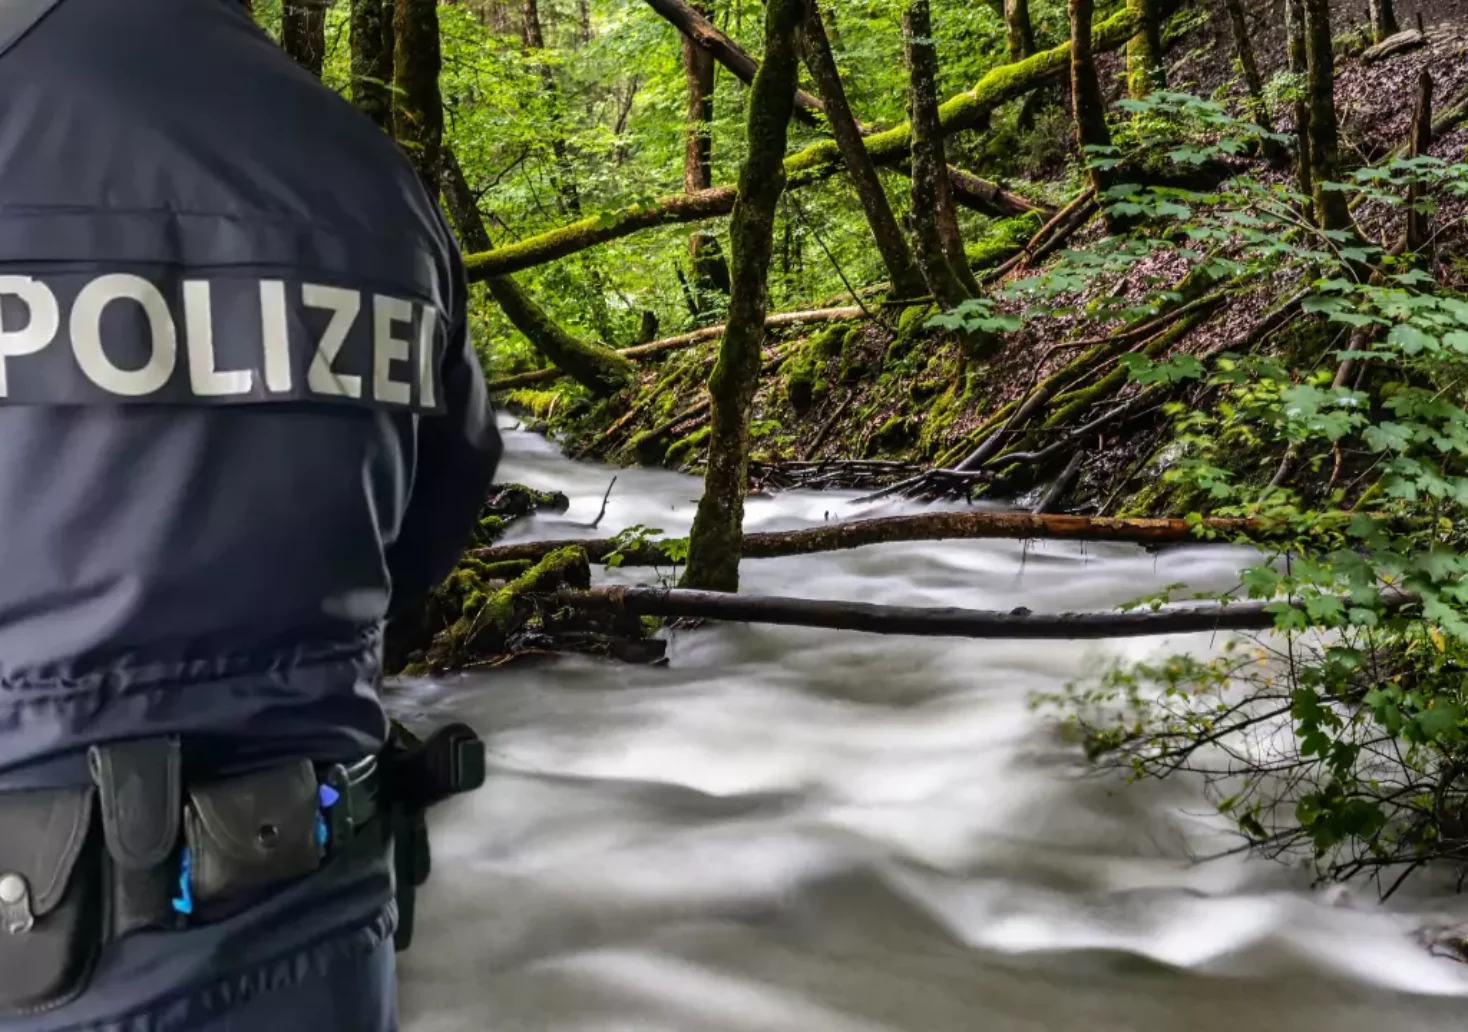 Bild auf 5min.at zeigt einen Polizisten im Vordergrund und im Hintergrund einen Bach im Wald.